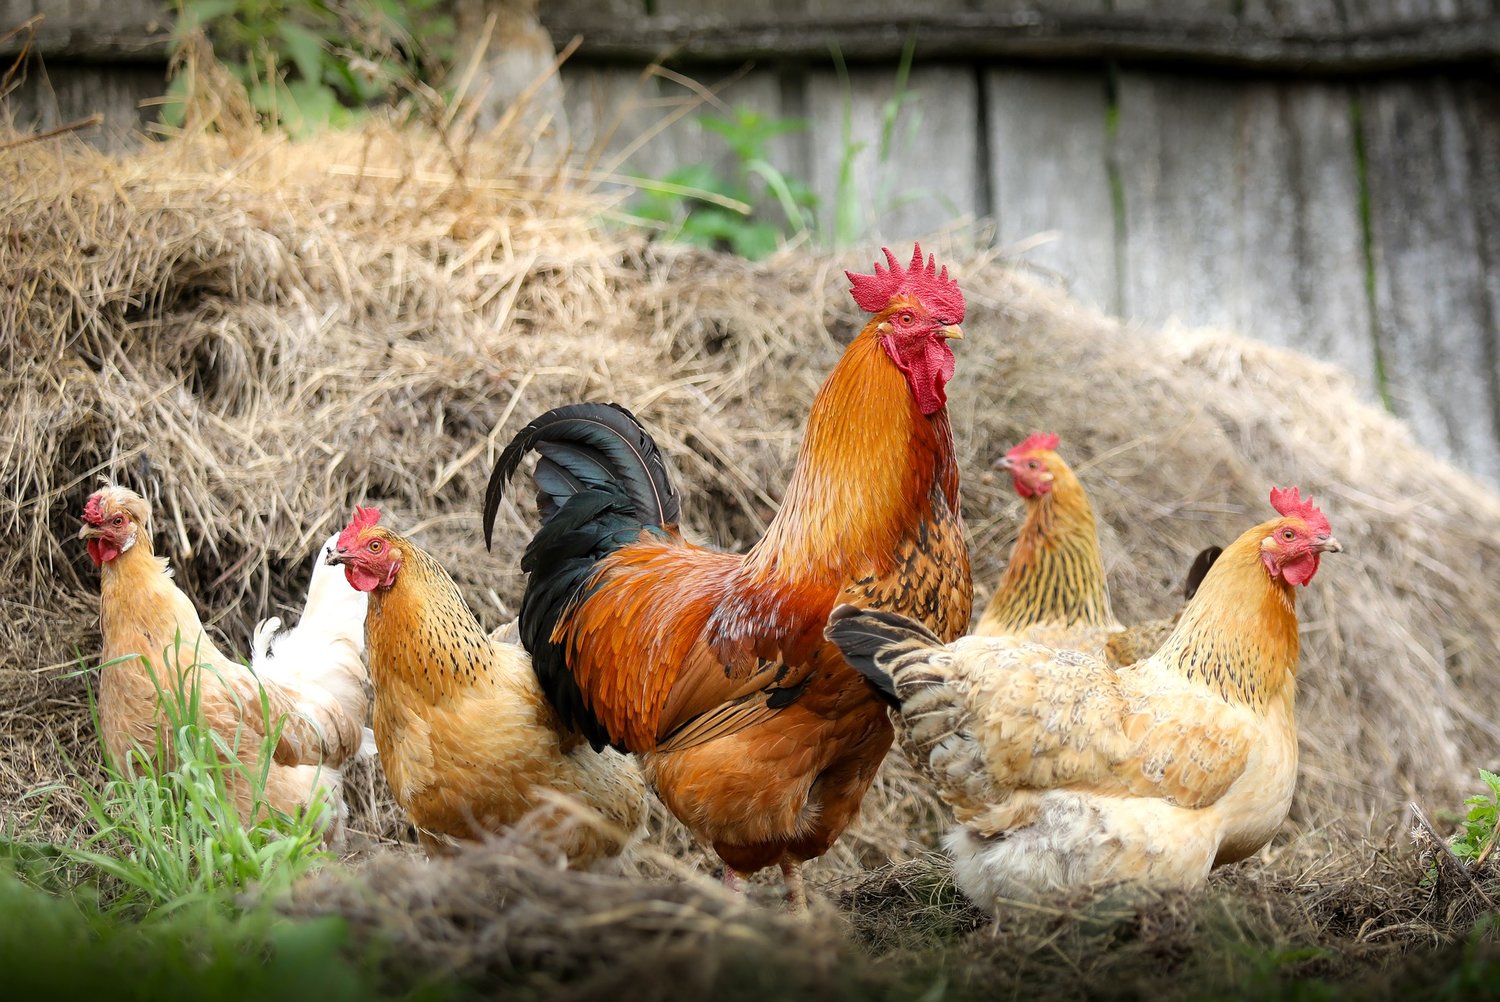 El Departamento de Salud Pública del Condado de Chatham pide a todos los granjeros y propietarios de aves del Condado de Chatham que tomen precauciones con sus animales para protegerlos de la gripe aviar.